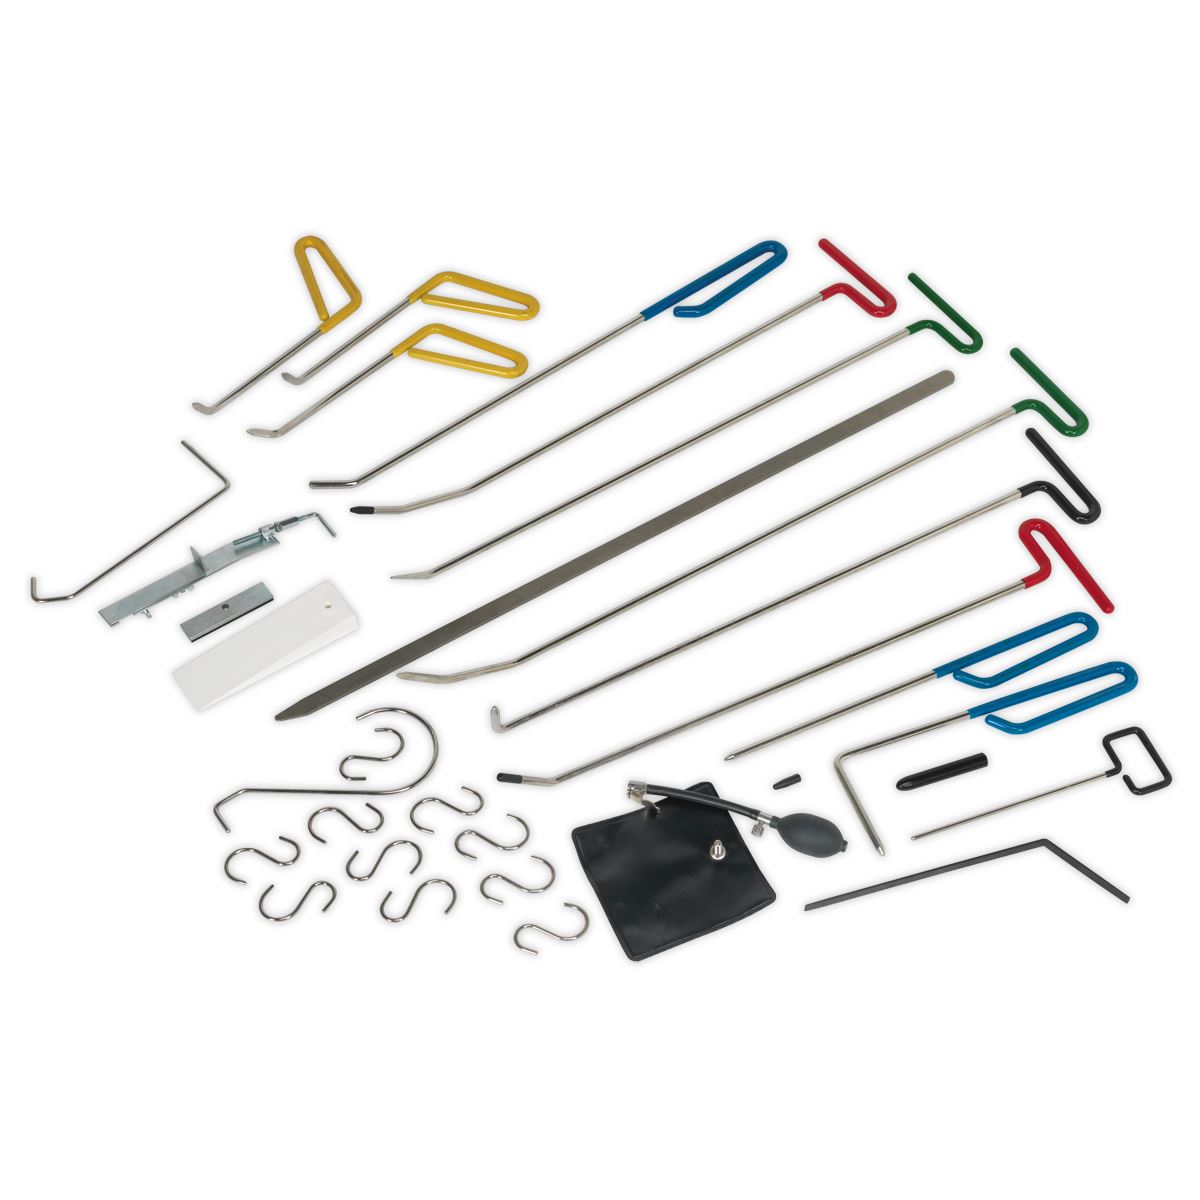 Sealey Paintless Dent Repair Kit 33pc